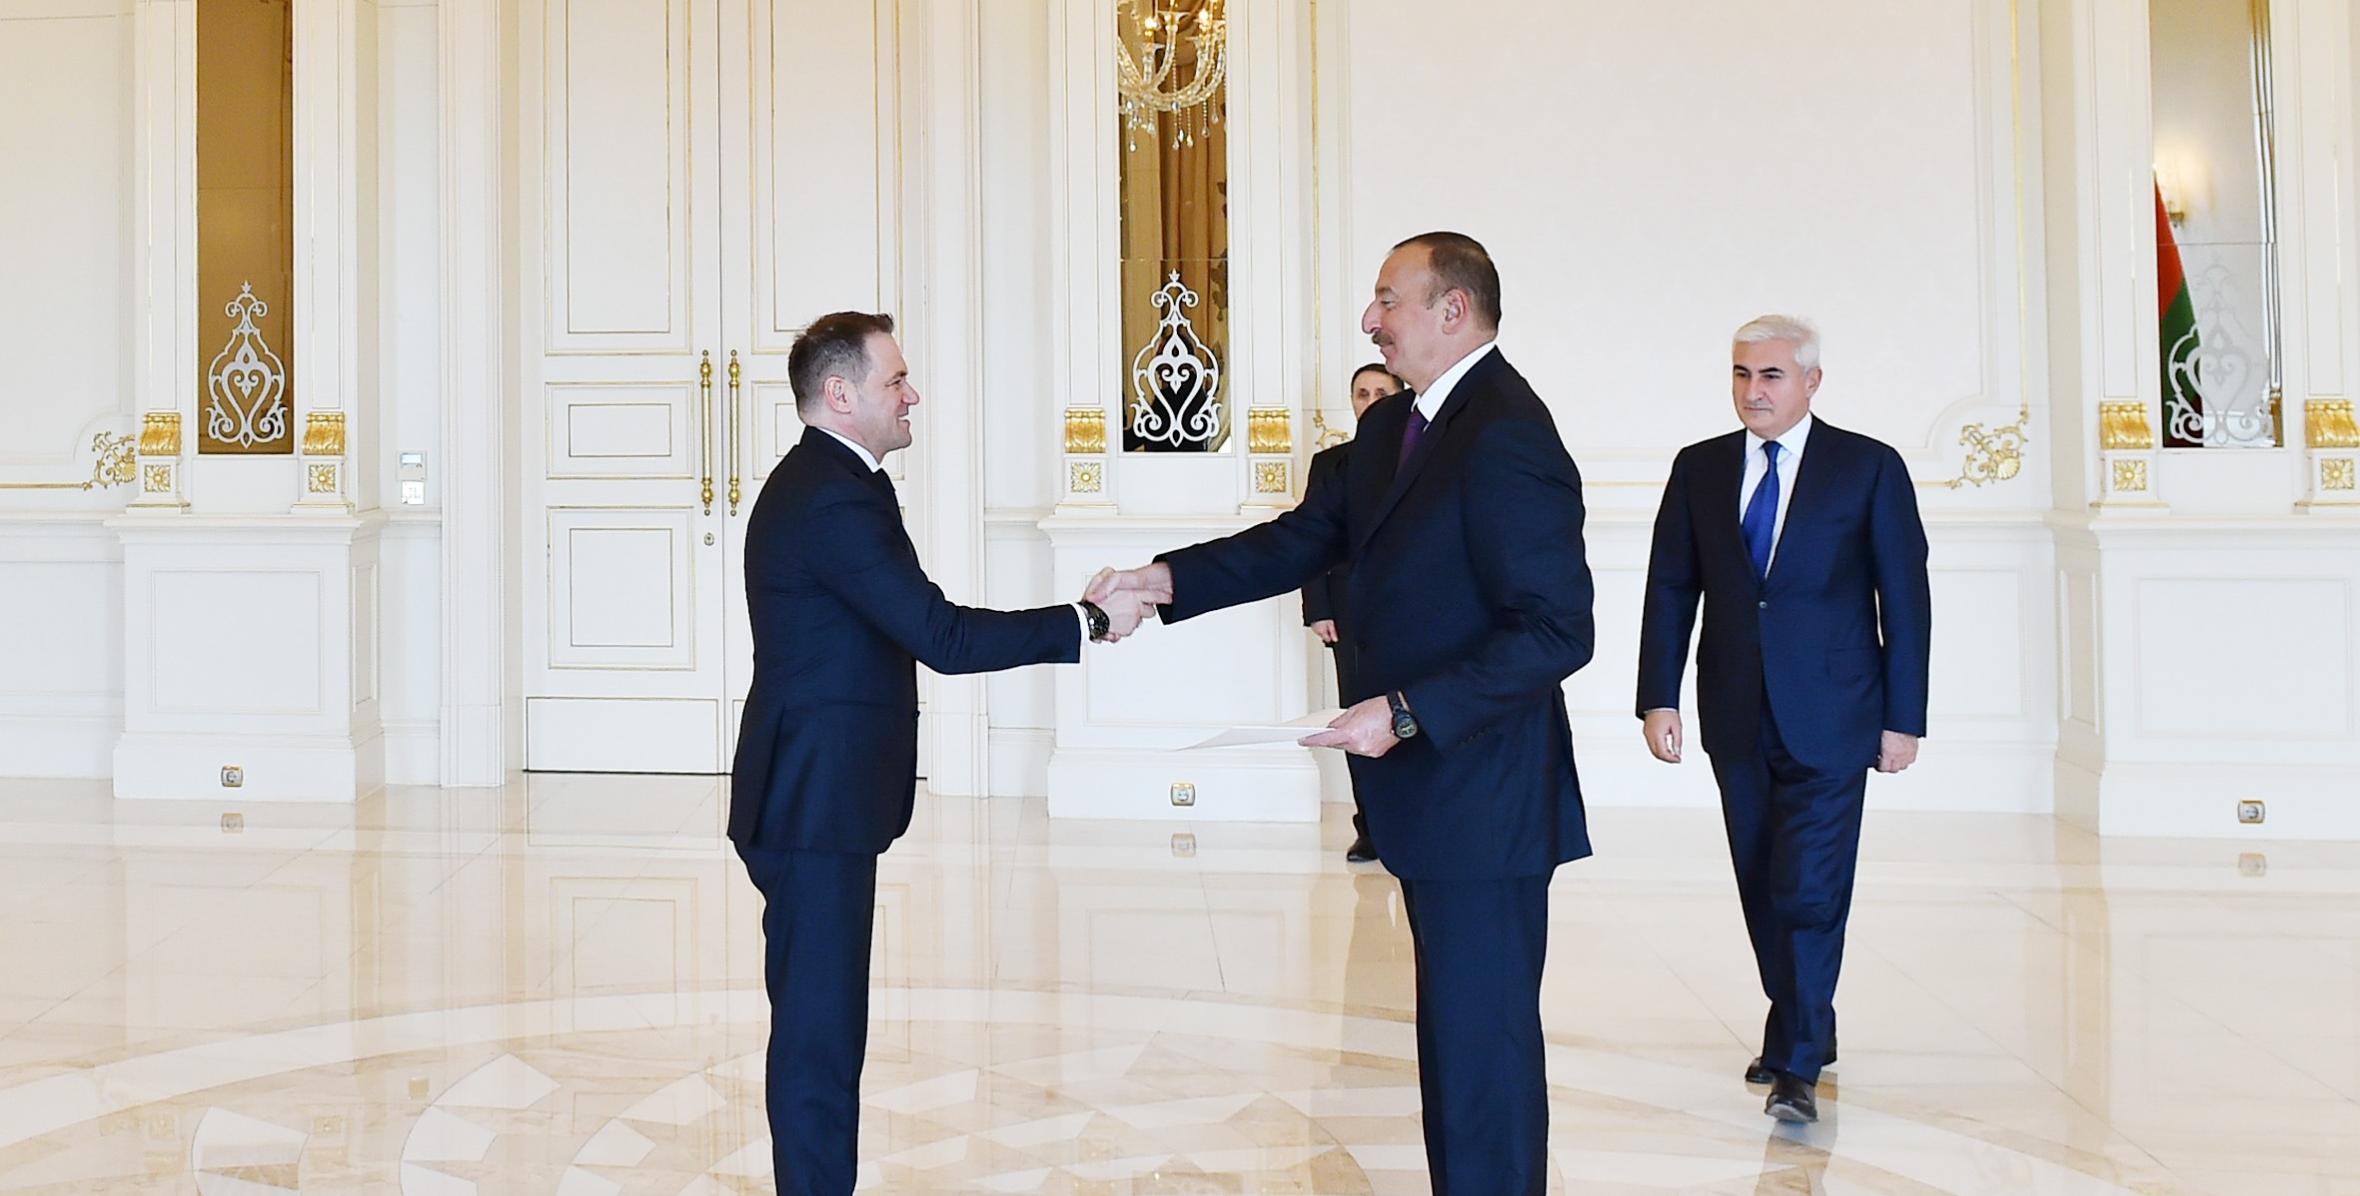 Ильхам Алиев принял верительные грамоты новоназначенного посла Албании в Азербайджане